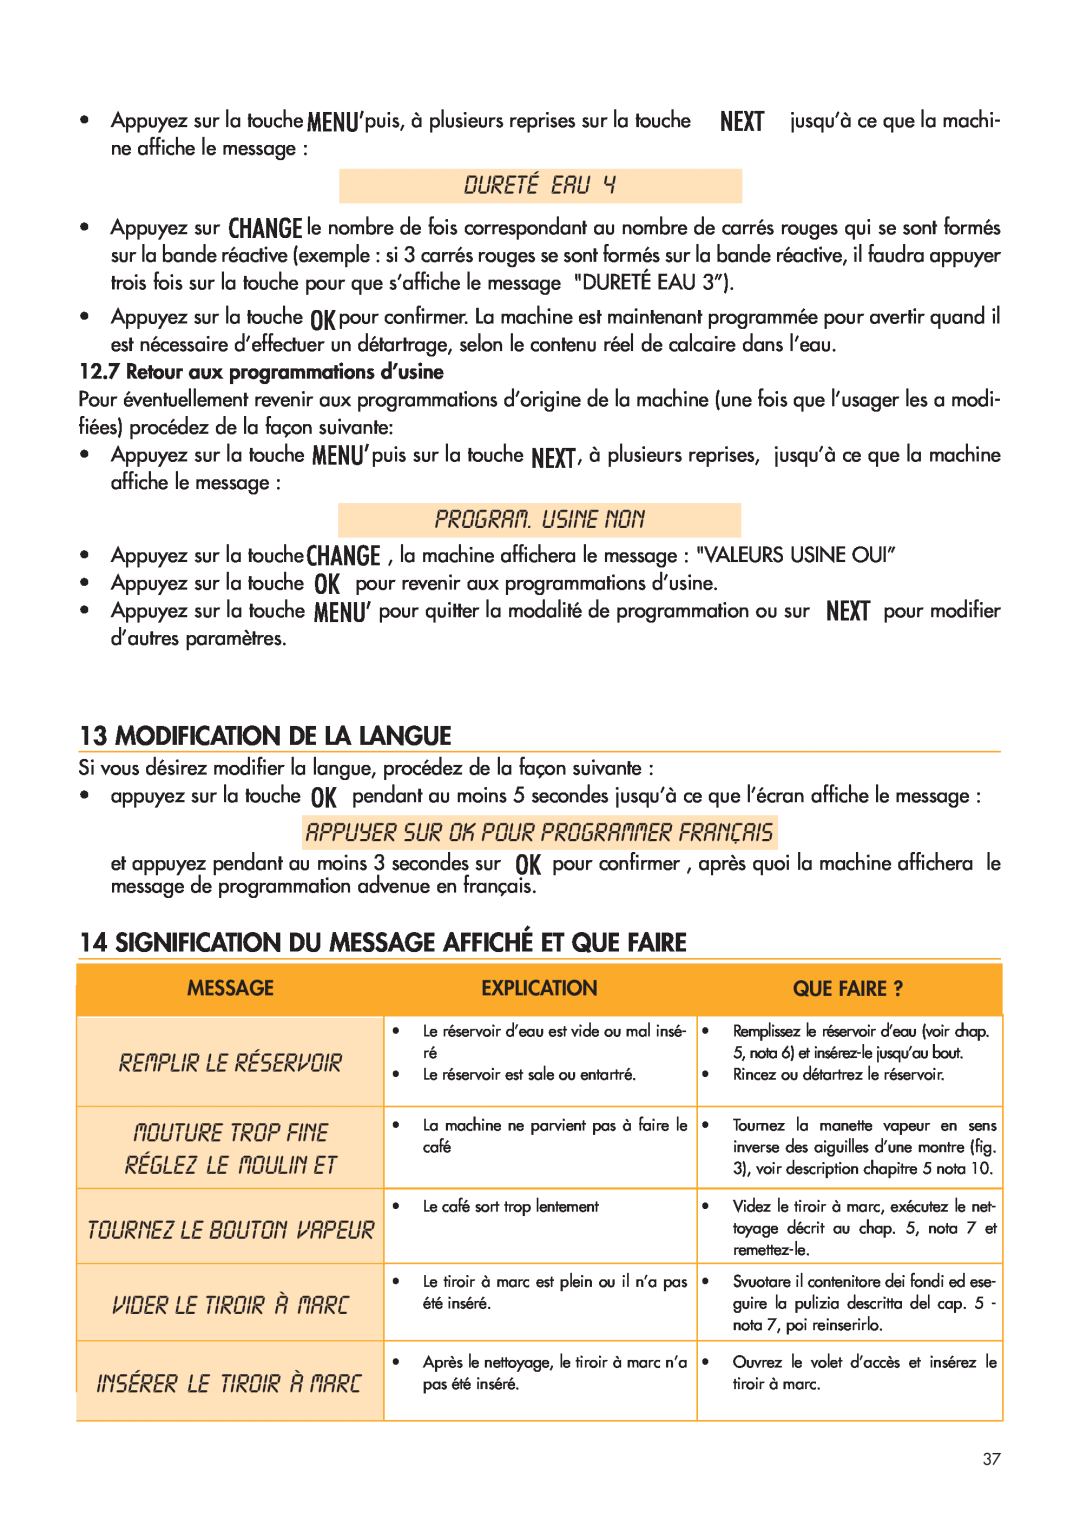 DeLonghi ESAM4400 manual Dureté Eau, Program. Usine Non, Appuyer Sur Ok Pour Programmer Français, Modification De La Langue 